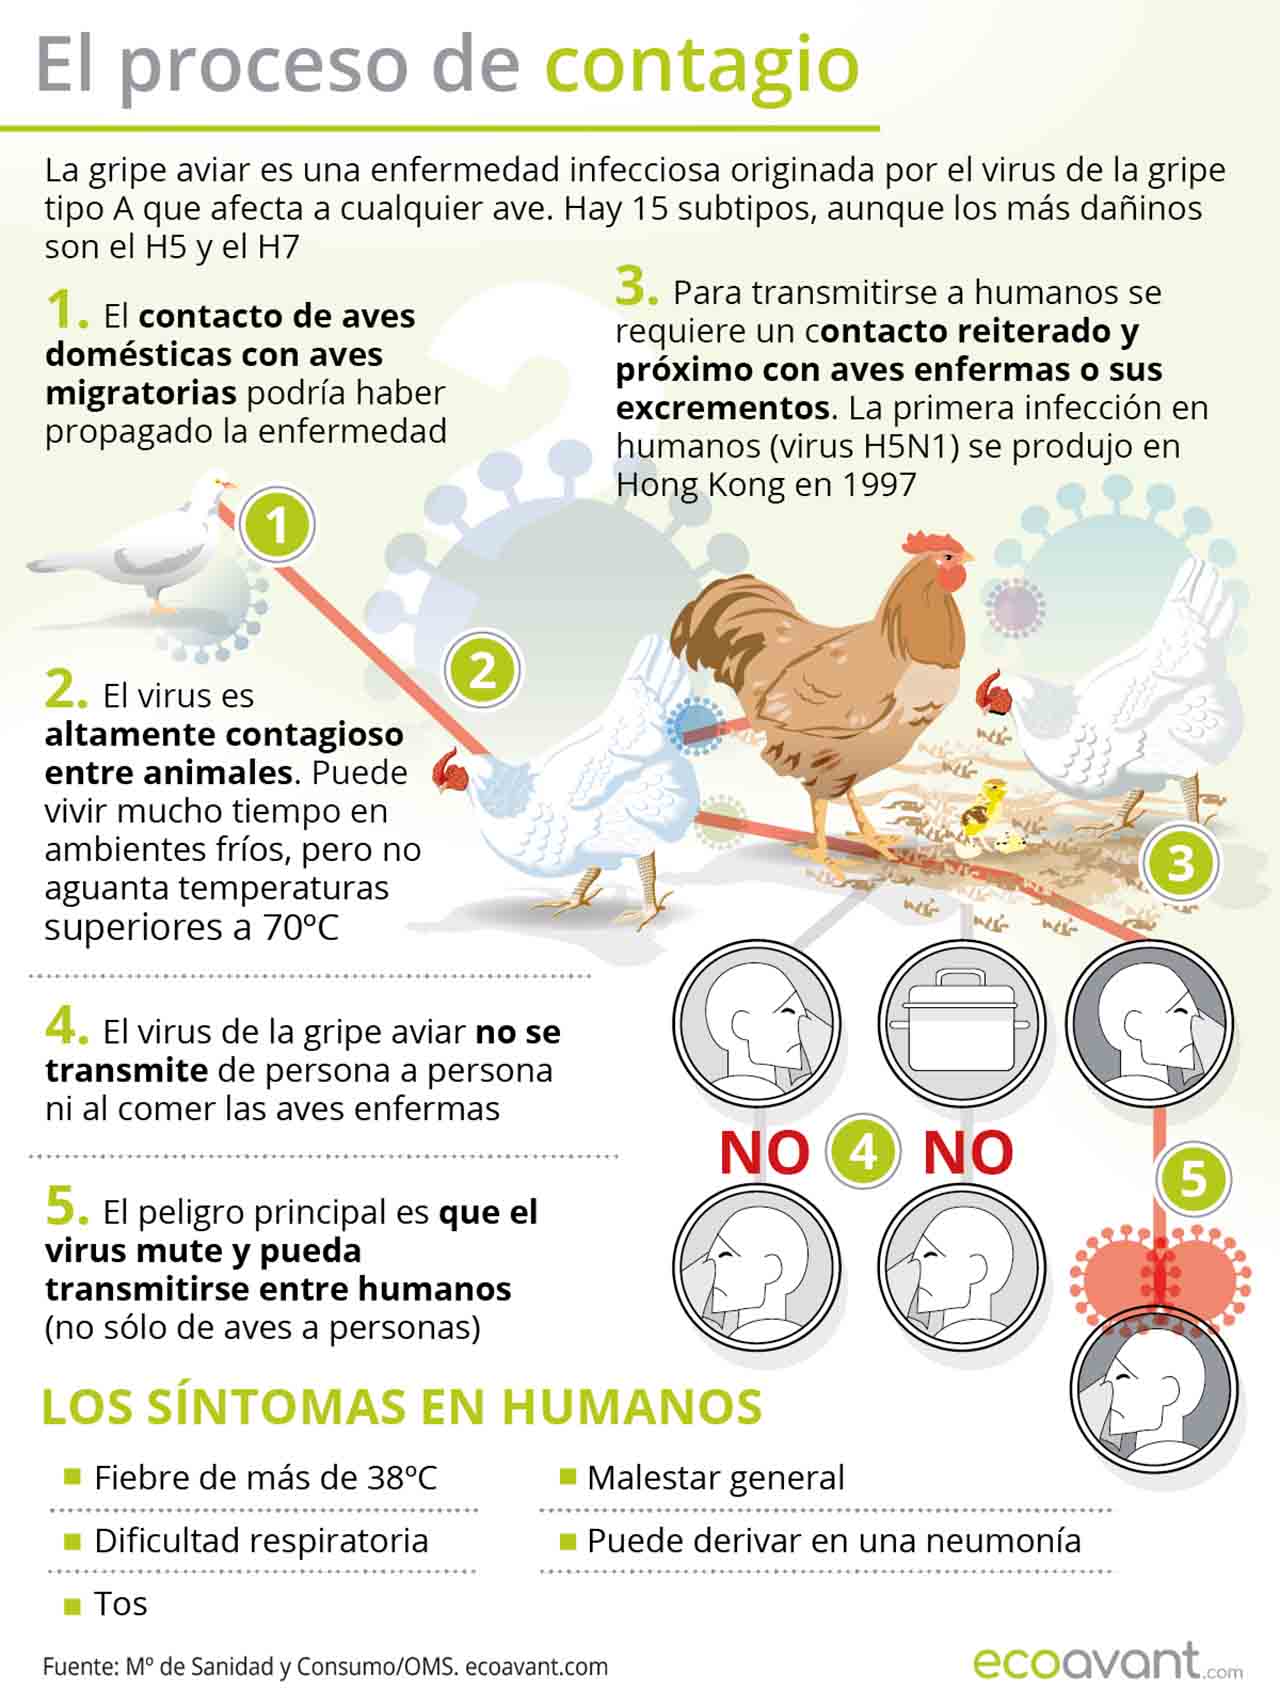 Proceso de contagio de la gripe aviar y los síntomas en humanos / Ilustración: EA